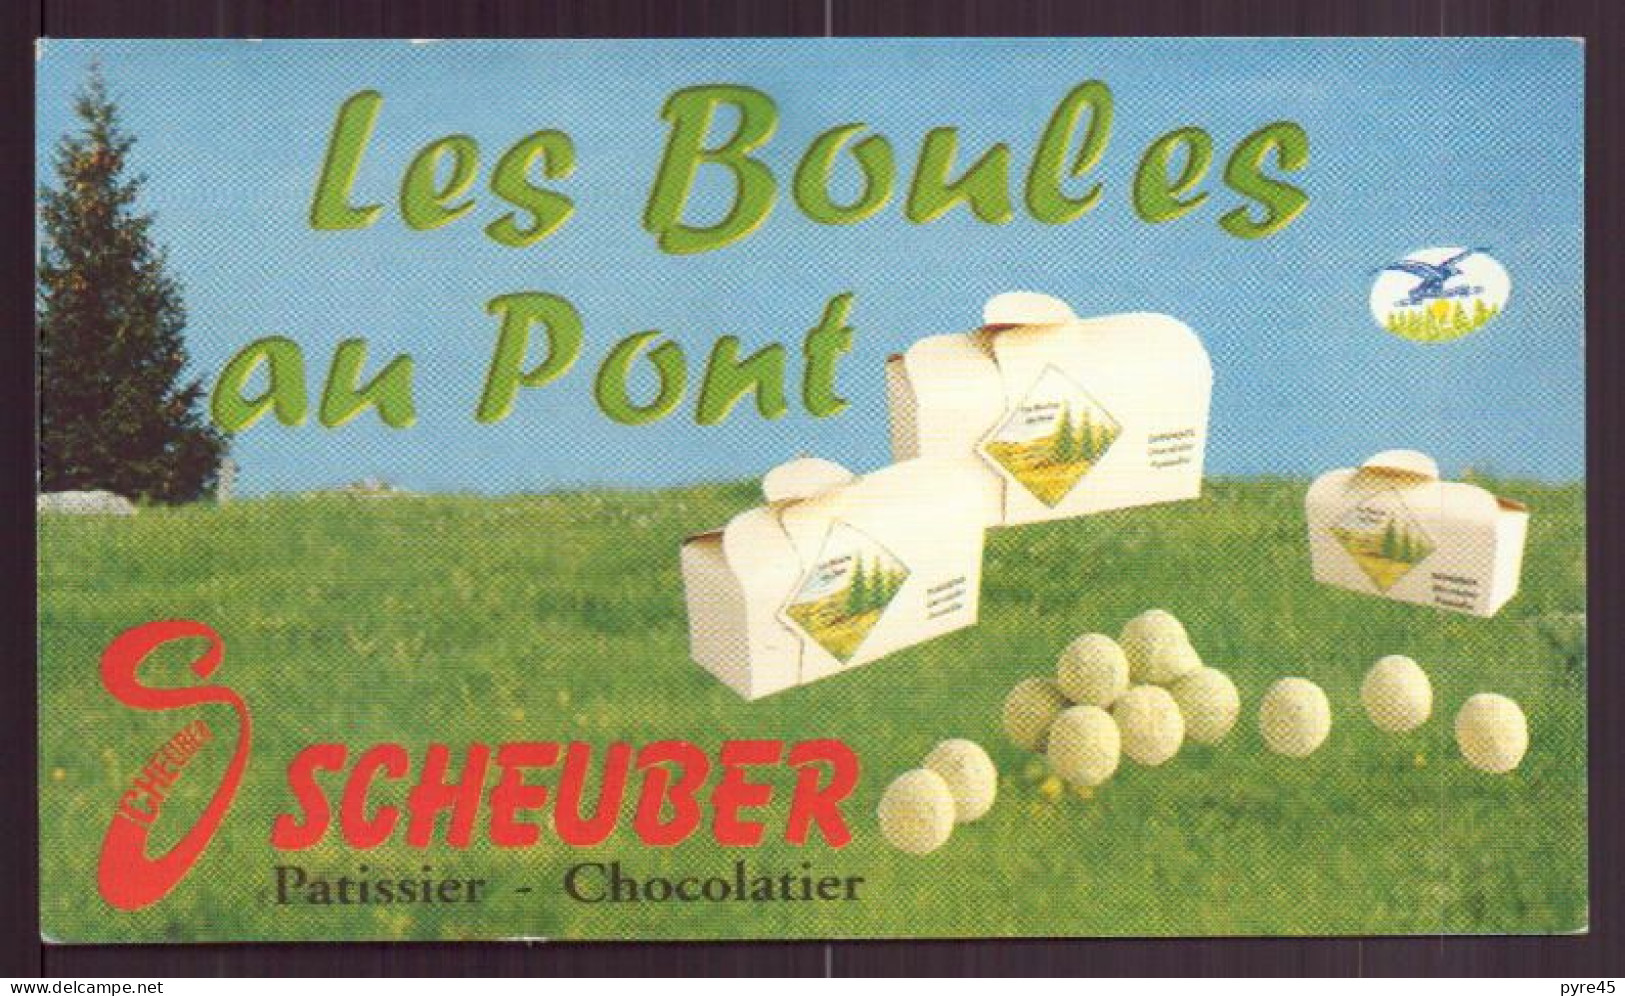 CARTE PUBLICITAIRE LES BOULES AU PONT SCHEUBER PATISSIER CHOCOLATIER A PONTARLIER - Visitekaartjes